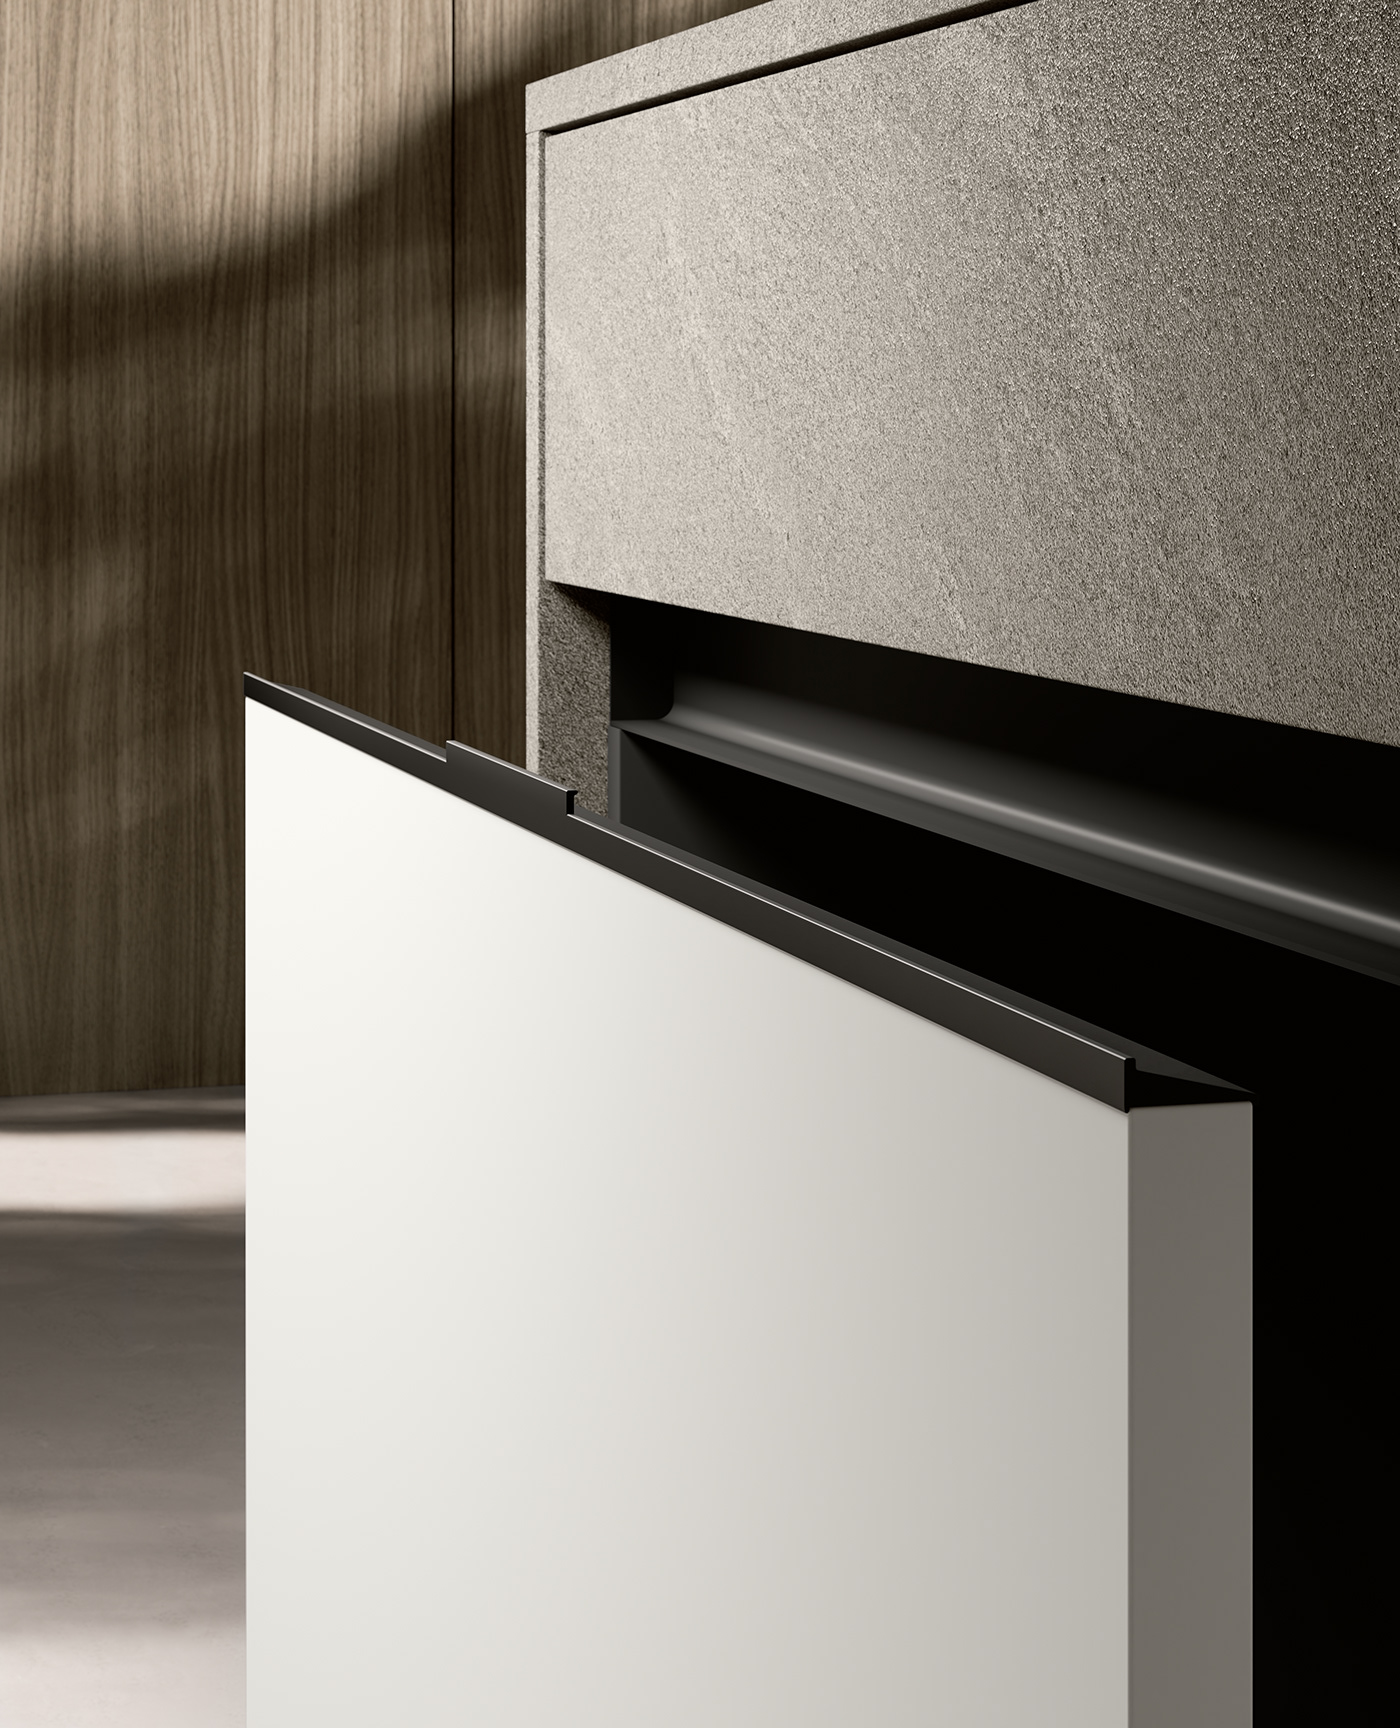 3D 3ds max architecture archviz design interior design  kitchen Render visualization